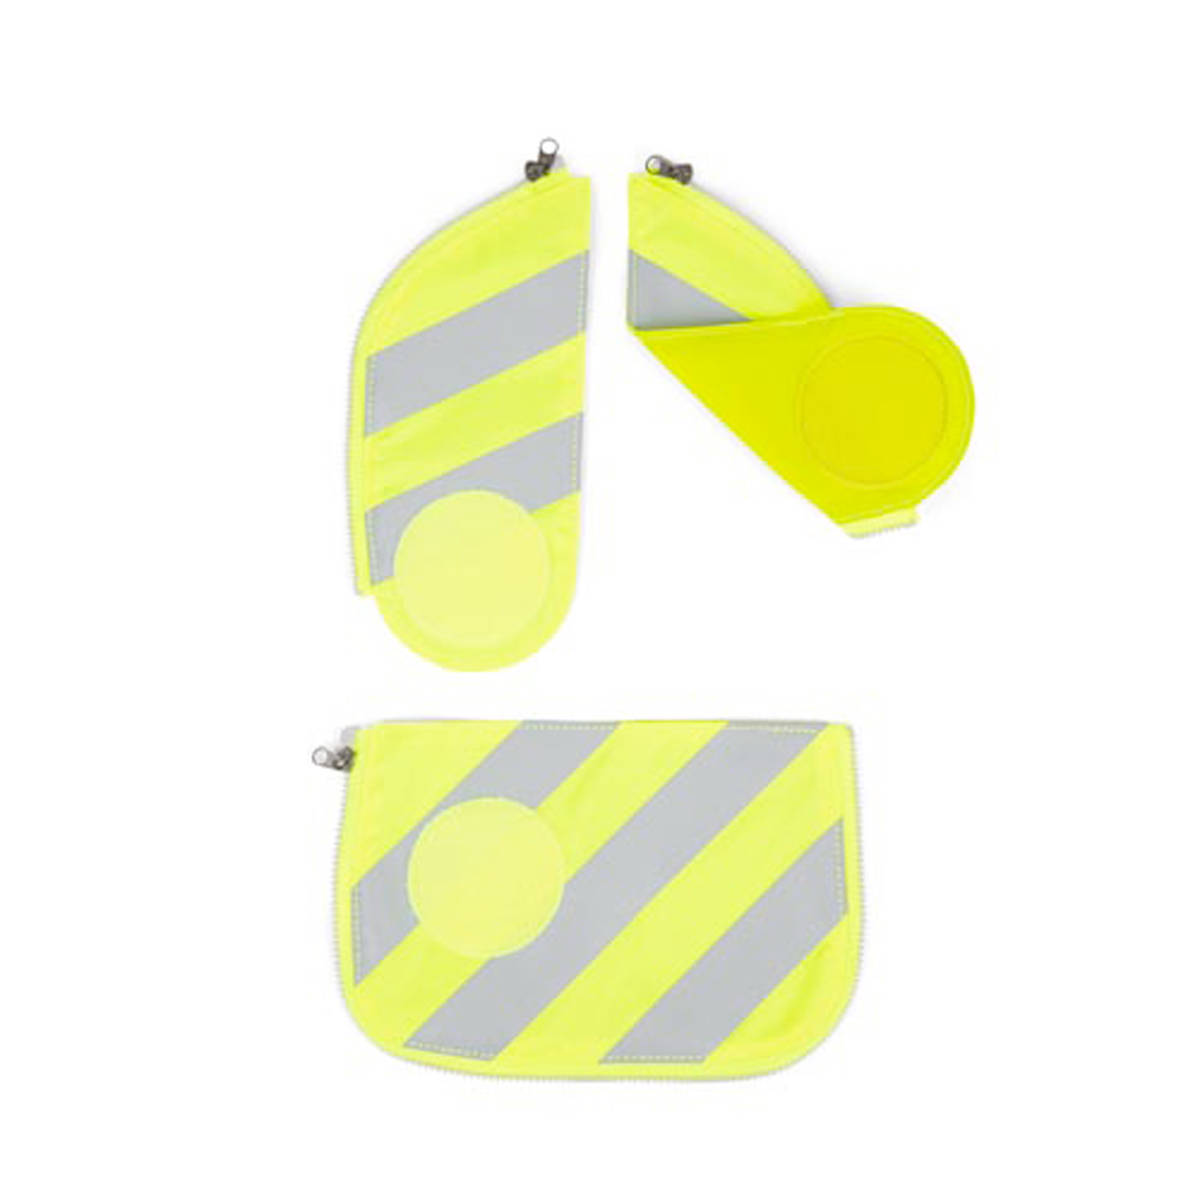 Ergobag Cubo Sicherheitsset mit Reflektierstreifen gelb Frontansicht